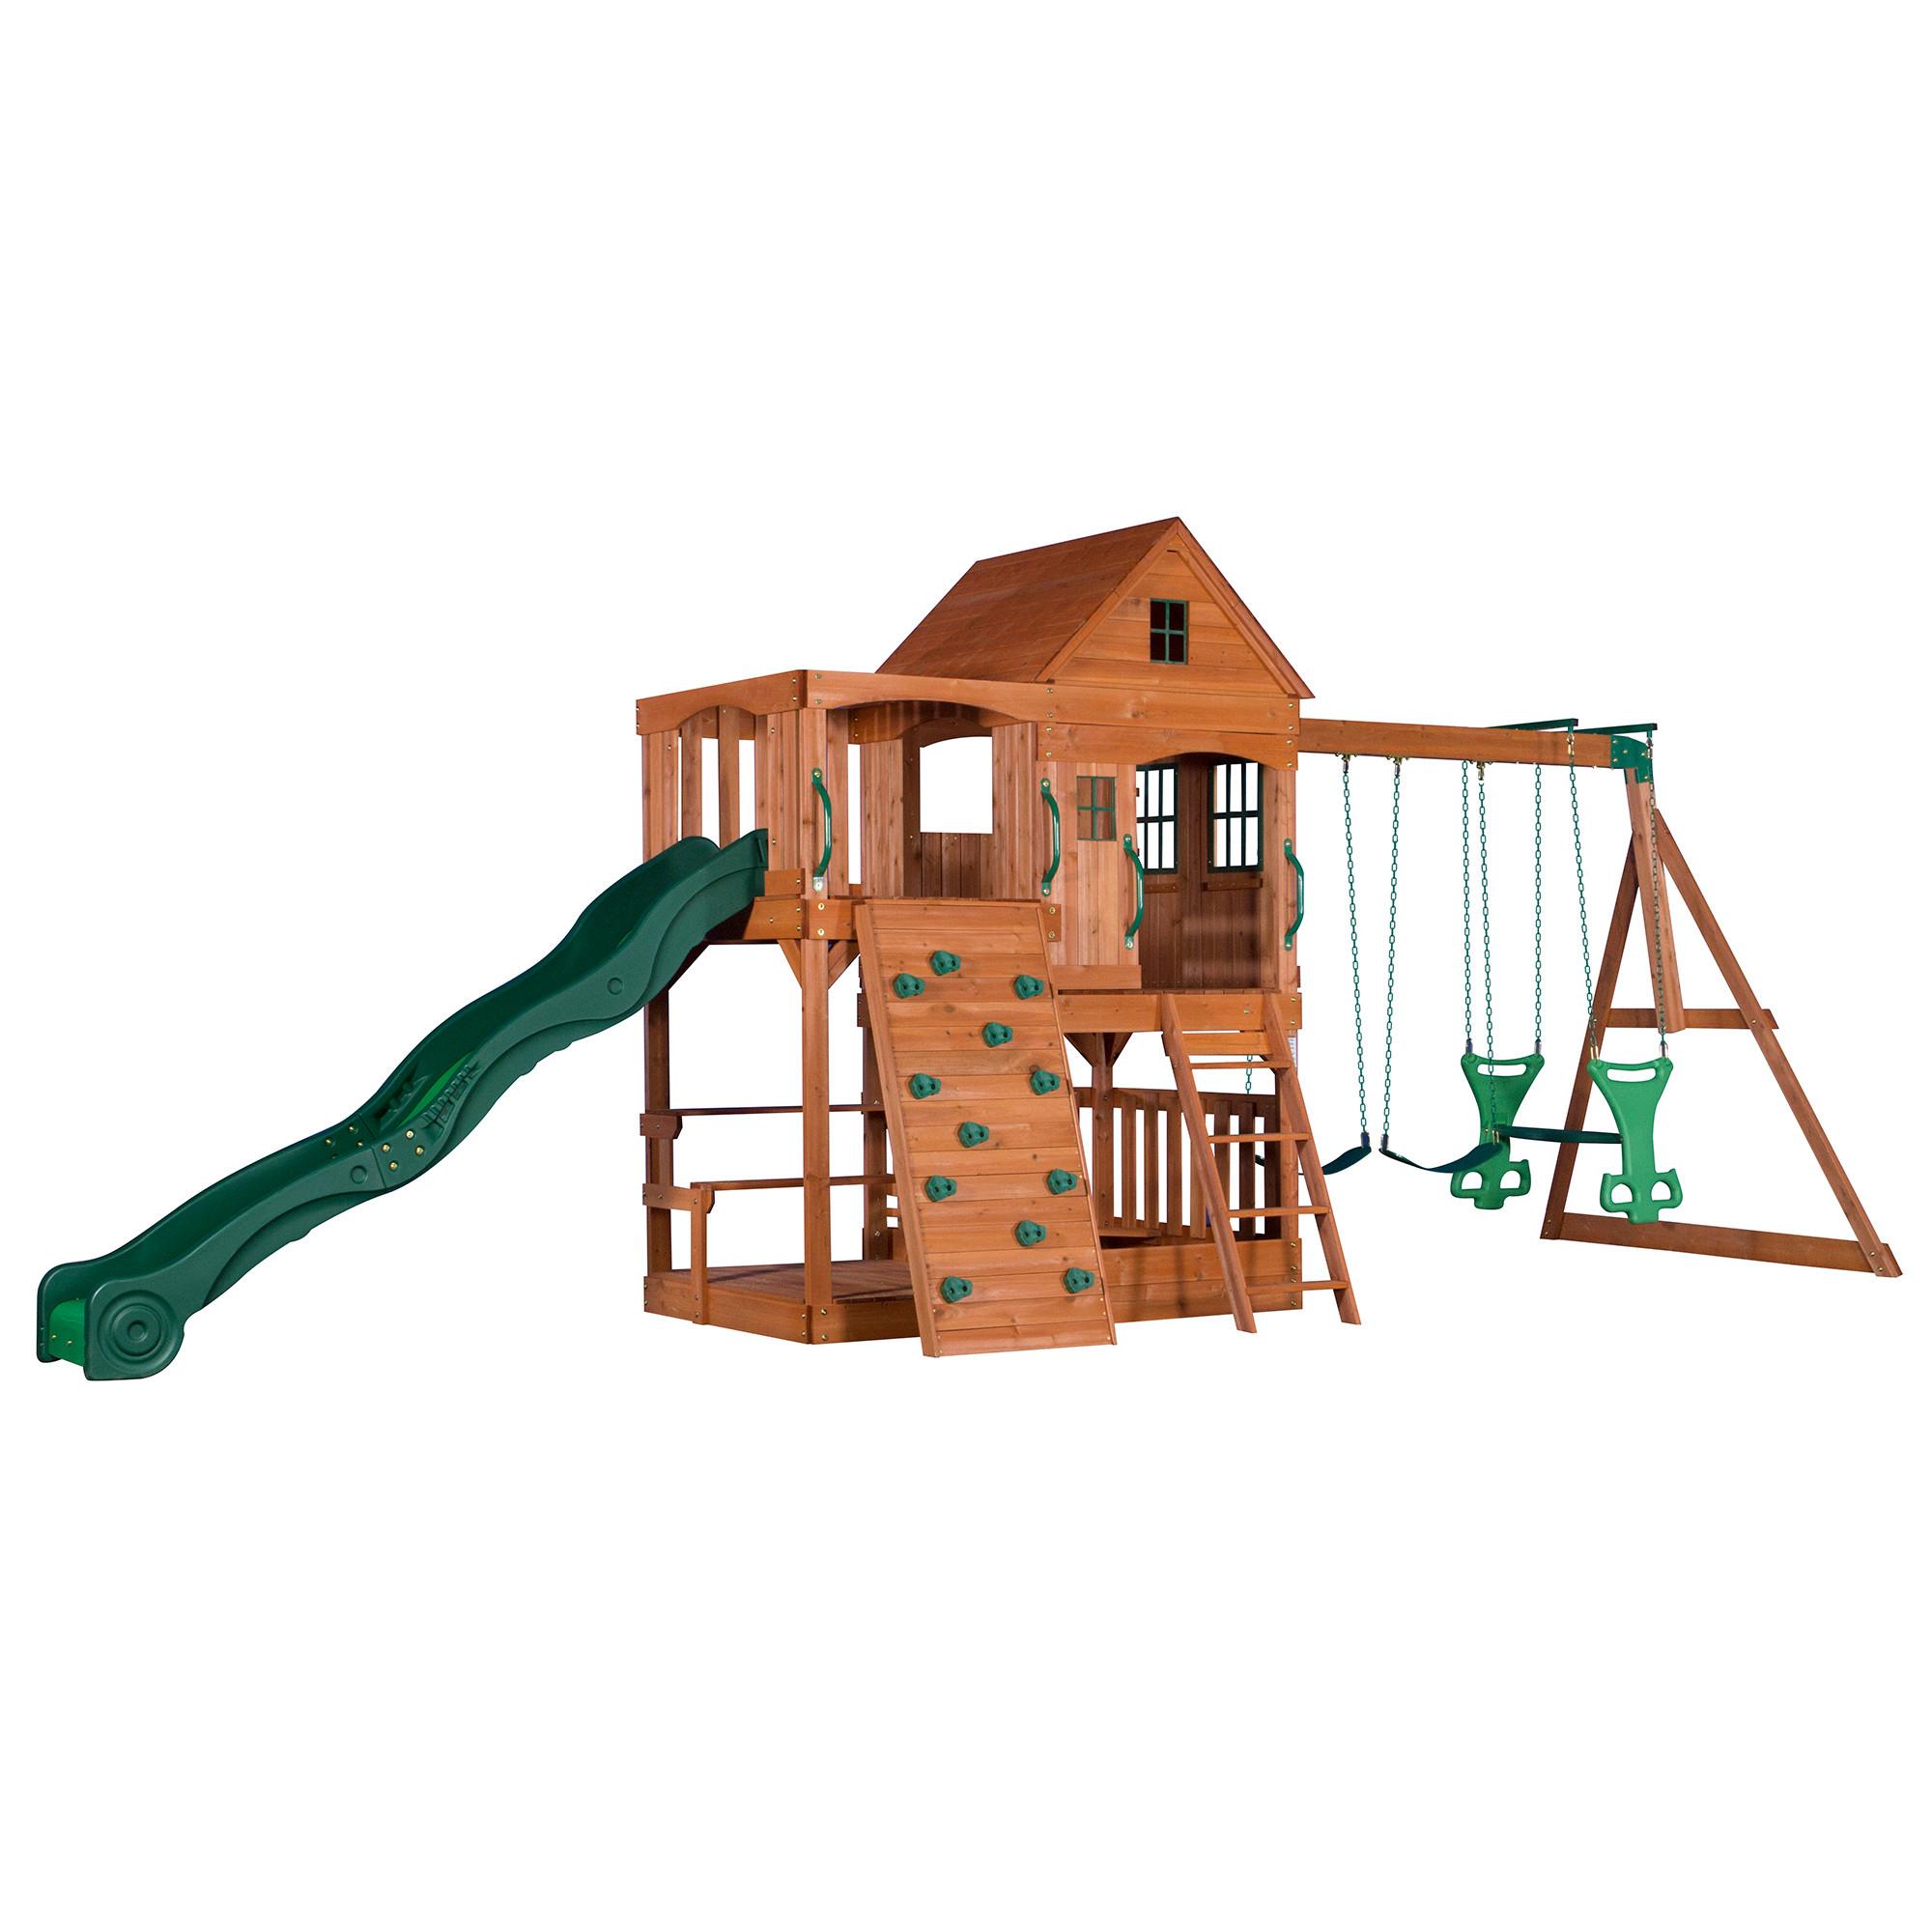 Věž Pro Děti Hill Crest Tower - zelená/hnědá, Konvenční, dřevo (537,2/290/409cm)